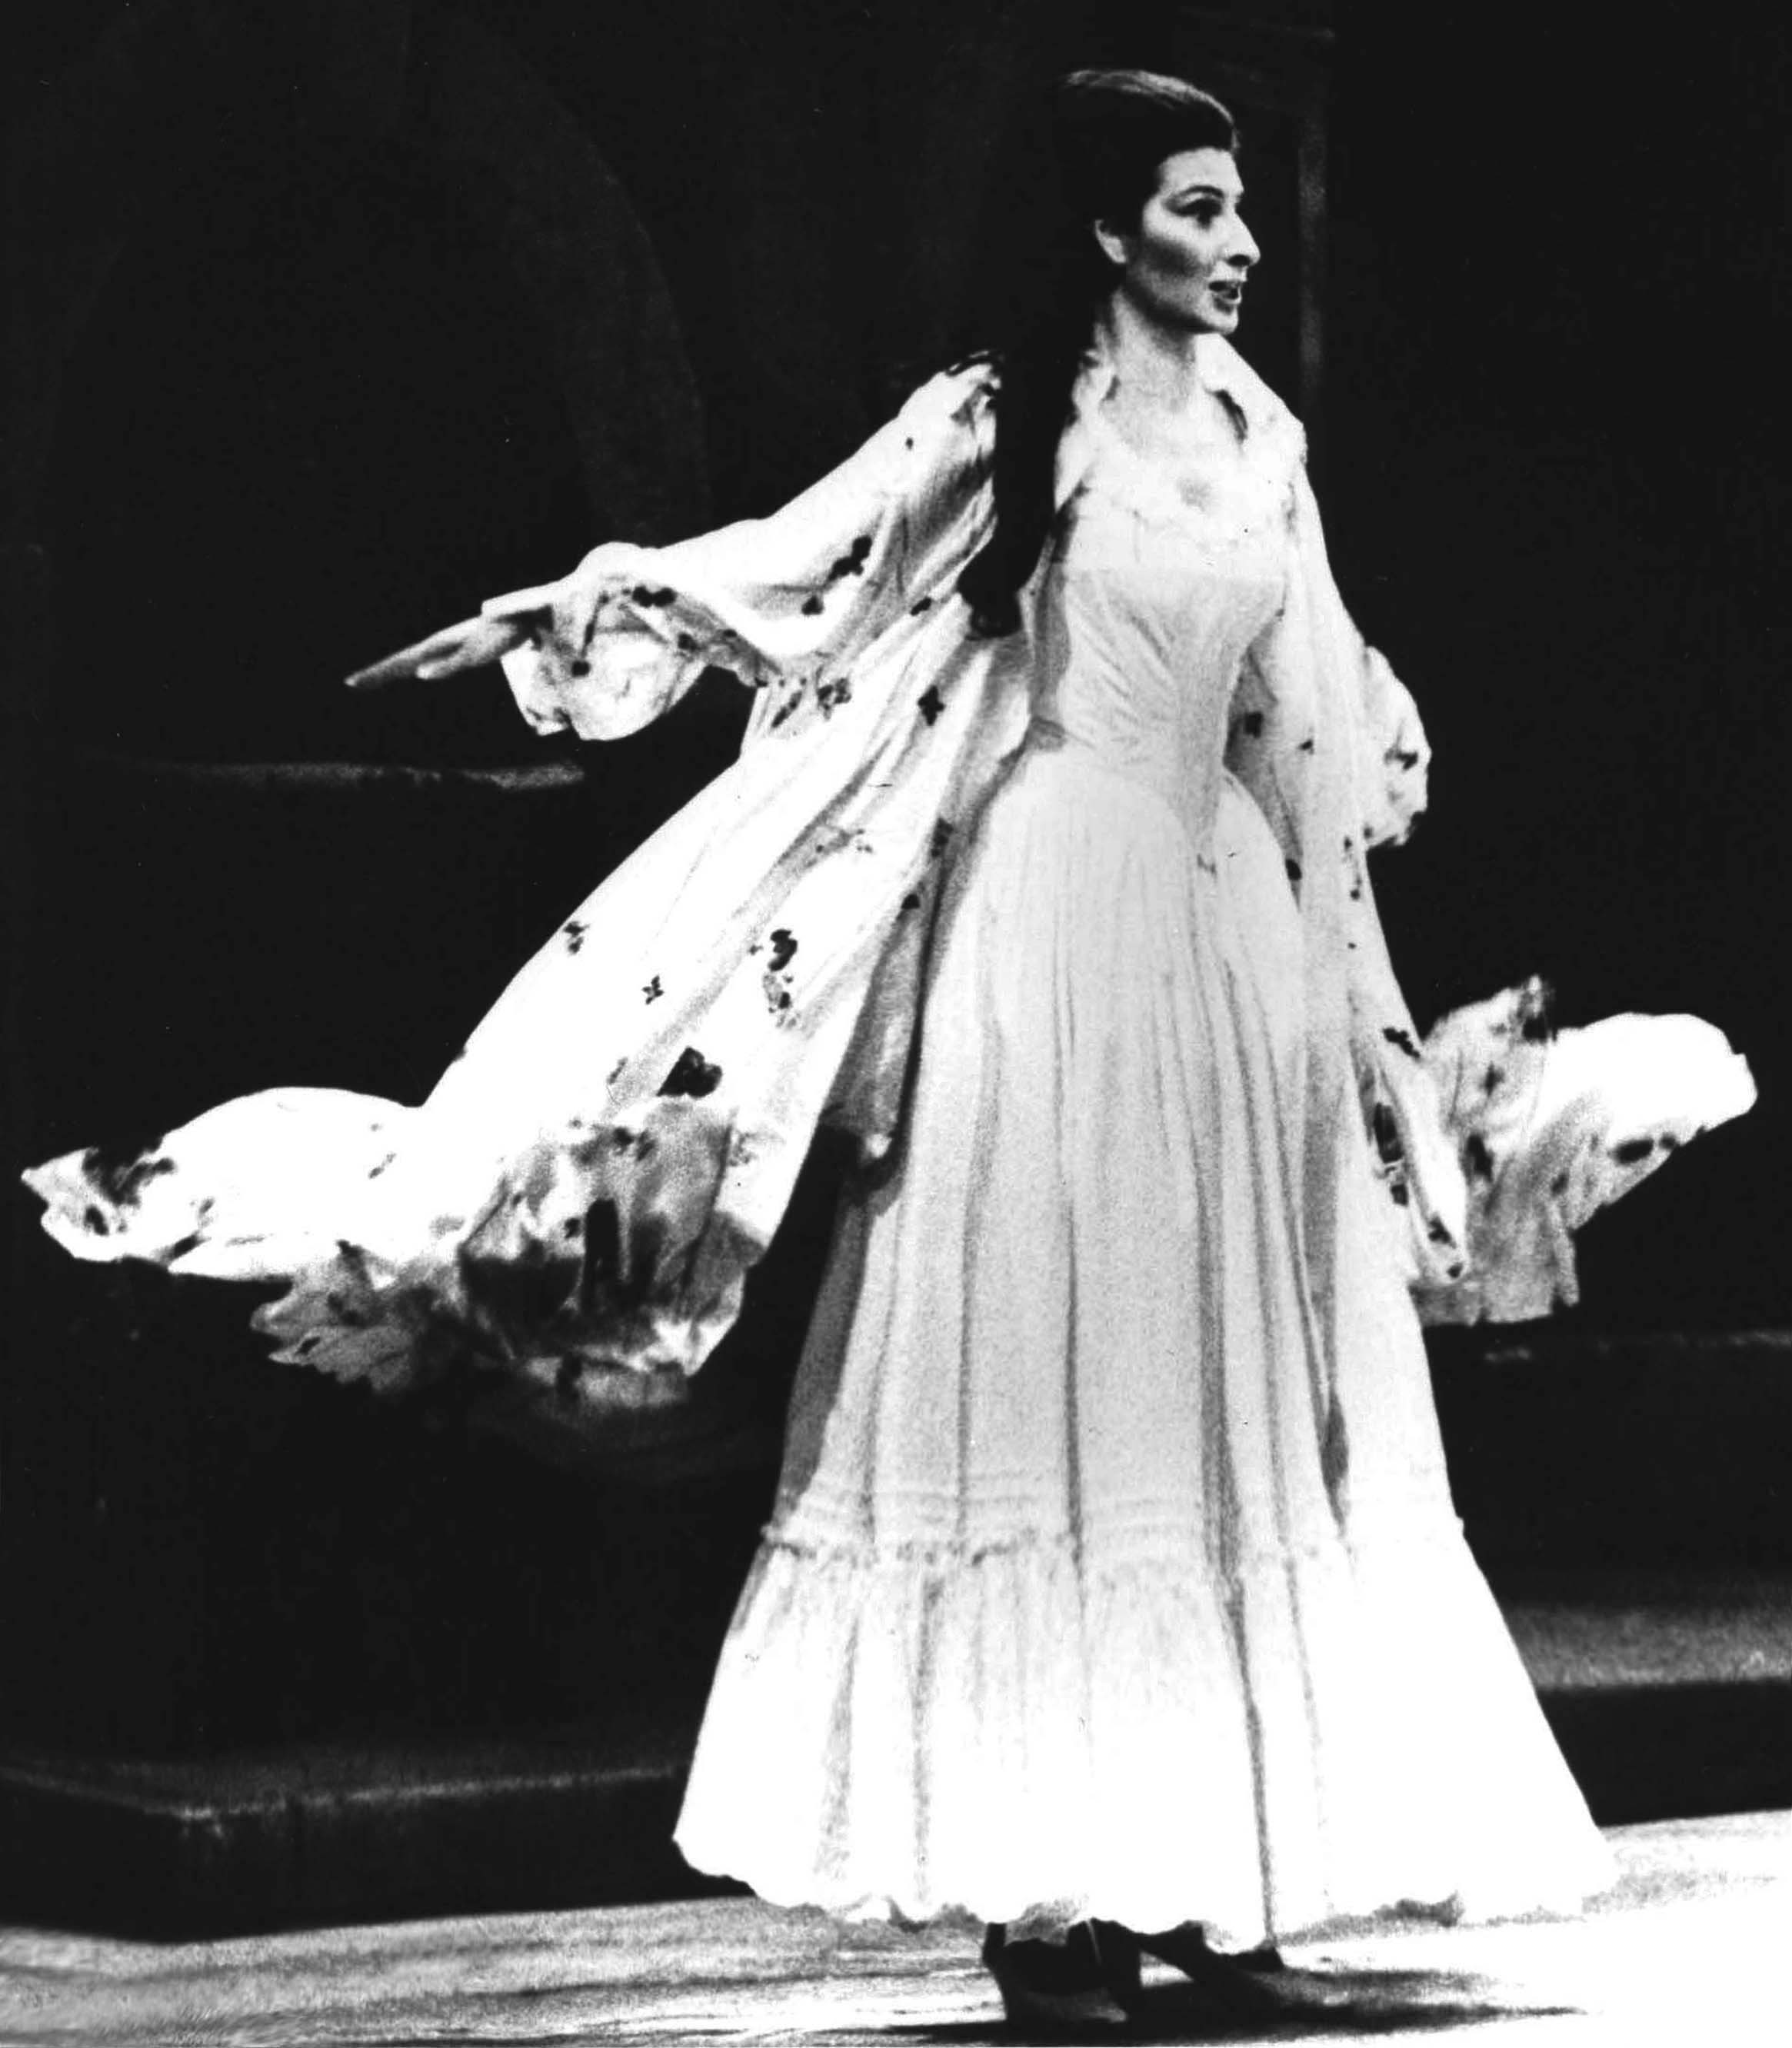 Lucia Aliberti⚘Opera⚘"Don Pasquale"⚘Teatro alla Scala⚘Milan⚘On Stage⚘Costumes by the Fashion Designer Gianni Versace⚘:http://www.luciaaliberti.it #luciaaliberti #teatroallascala #milan #donpasquale #opera #costumesbygianniversace #onstage